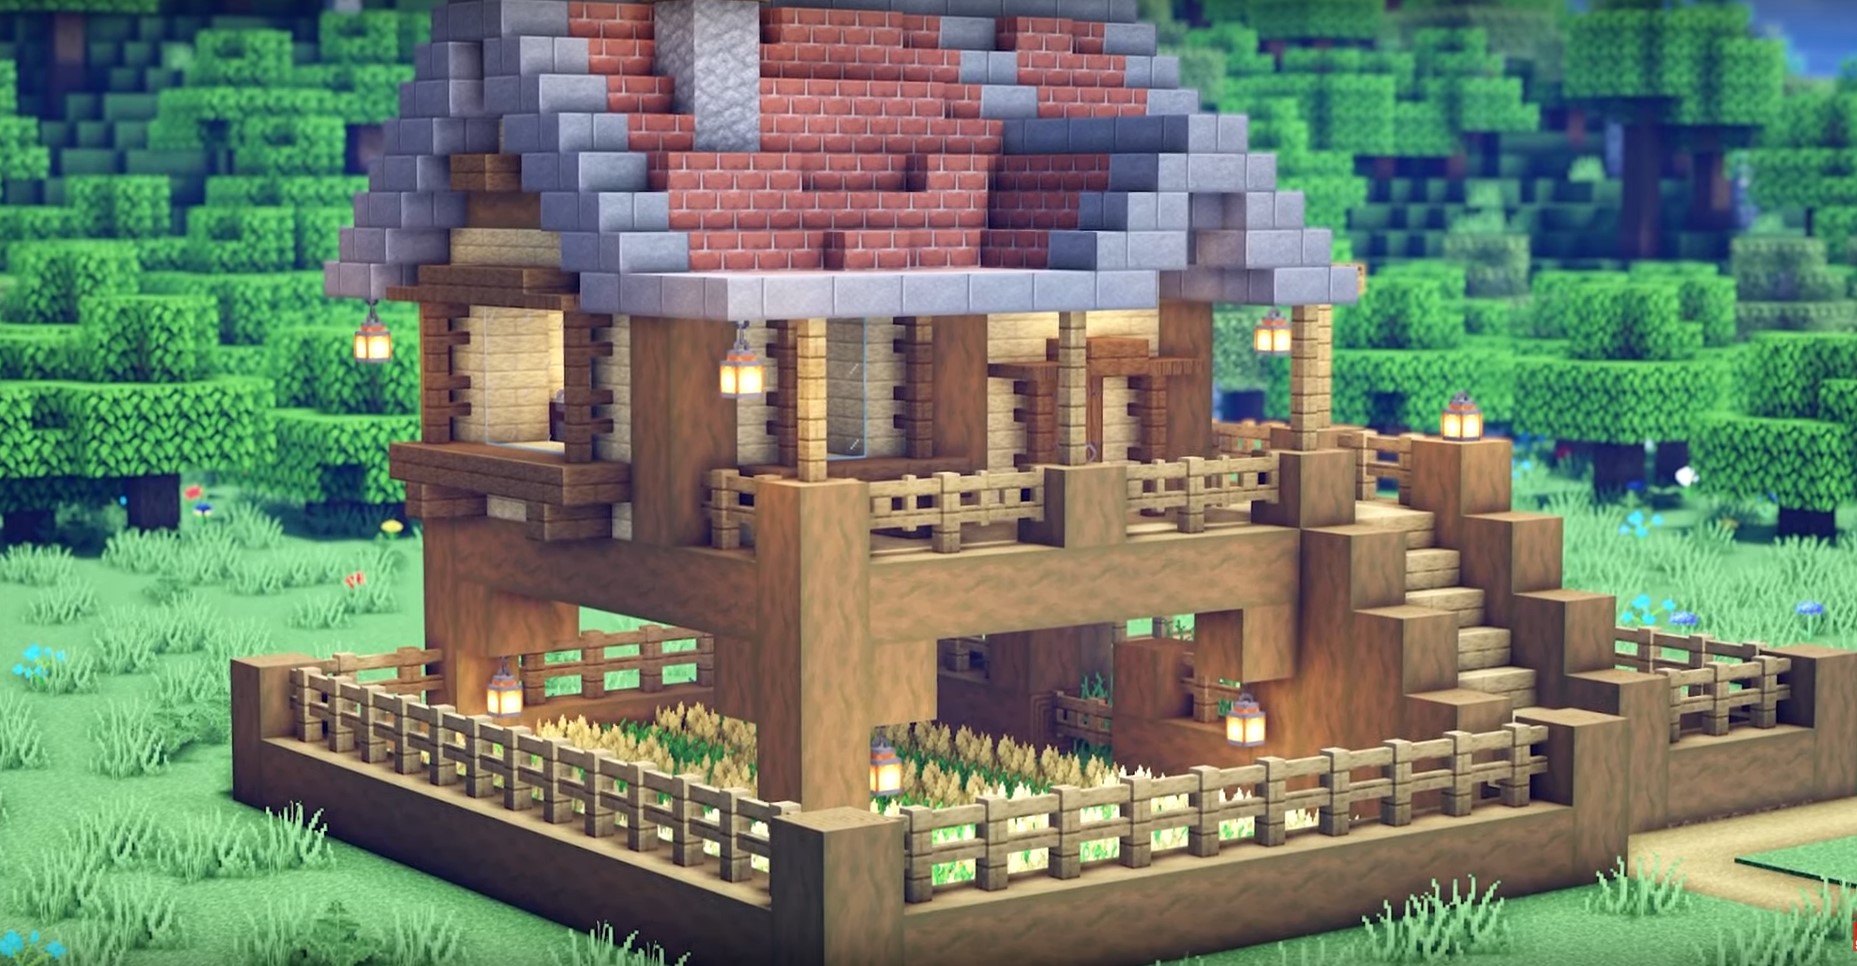 Beautiful Starter Brick House minecraft building idea